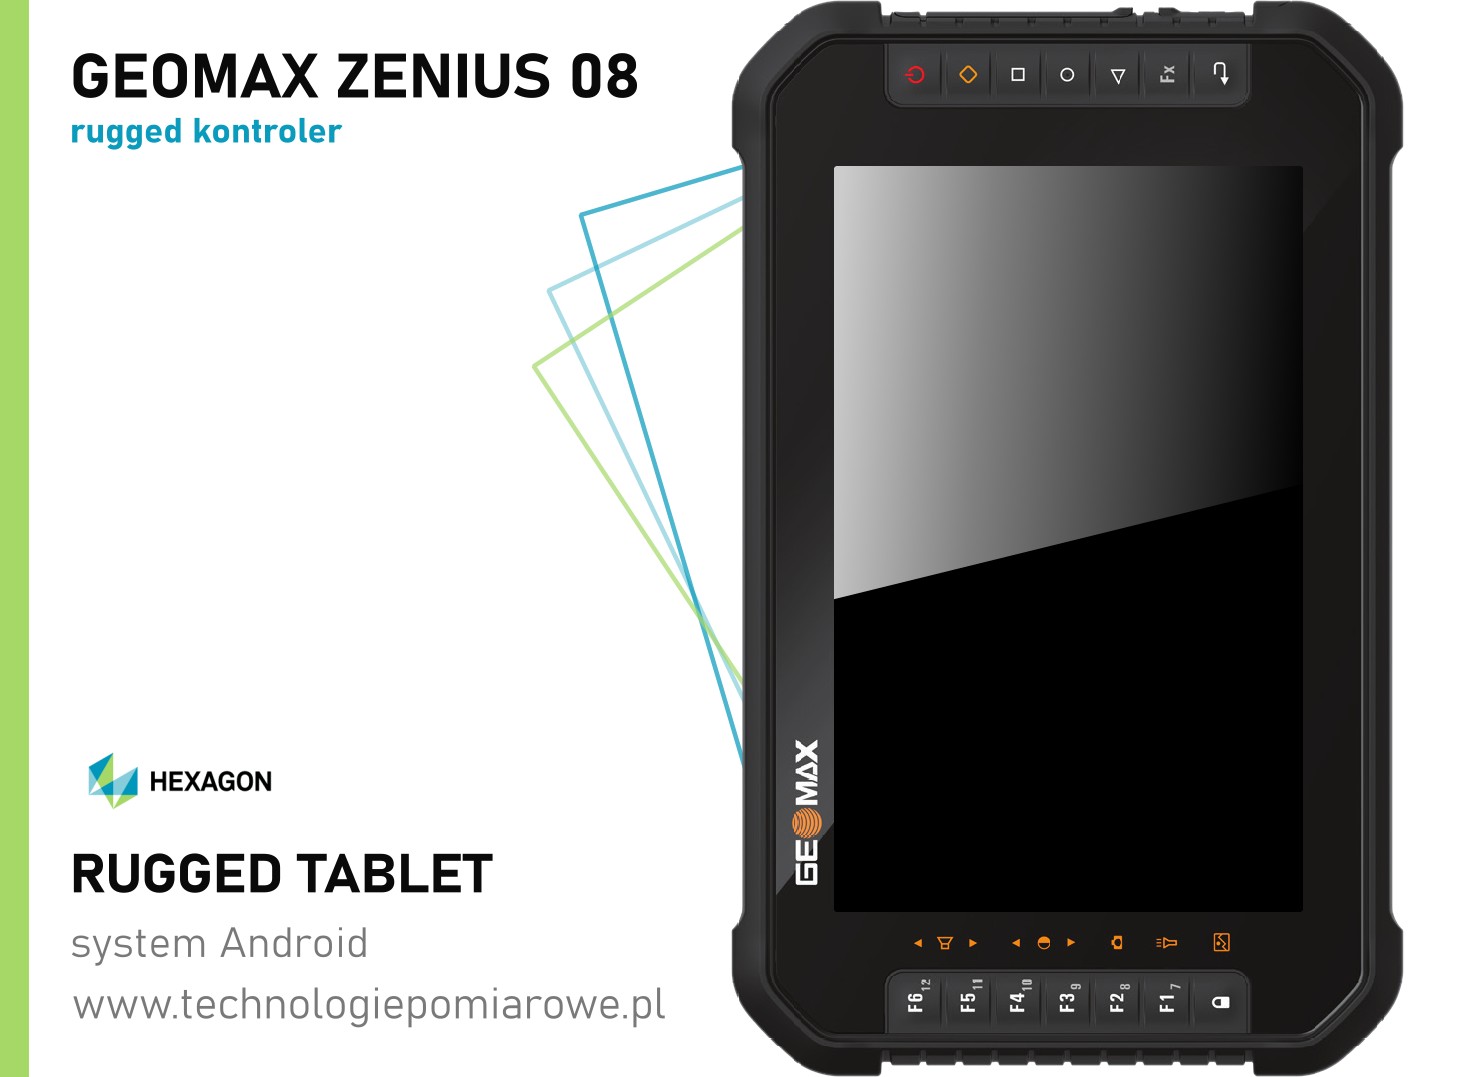 Kontroler polowy do odbiornika GNSS RTK Geomax Zenius 08; kontroler polowy Geomax Zenius 08; odbiornika gnss w zestawie z kontrolerem polowym Geomax Zenius 08; kontroler do odbiornika GNSS GPS geodezyjny; Profesjonalny zestaw pomiarowy: odbiornik GPS GNSS do pomiarów RTK Geomax, kontroler z Androidem, oprogramowanie polowe; Profesjonalne kontrolery polowe do zastosowań geodezyjnych; Kontrolery polowe do odbiorników GNSS RTK-sprawdź cena, promocja. Sklep geodezyjny geoshop.pl-oferuje profesjonalne kontrolery polowe do zestawów odbiorników GNSS RTK RTN. Kontroler polowy Nautiz X6 Handheld; Kontroler polowy Getac PS236; Kontroler polowy Getac PS336; kontroler polowy Psion Pro 3; kontrolery polowe Trimble; kontrolery polowe Leica Geosystems; kontrolery polowe Topcon; kontrolery polowe Kolida; kontrolery polowe Ruide; kontrolery polowe Geomax; kontrolery polowe Stonex; kontrolery polowe do odbiorników geodezyjnych GPS; kontroler polowy do zestawów RTK pełna oferta; tanie kontrolery polowe; cena kontrolery geodezyjne; NAUTIZ kontrolery geodezyjne polowe; serwis i naprawa kontrolerów polowych; rejestratory polowe geodezyjne; rejestratory polowe do odbiorników GNSS RTK RTN geodezyjne; rejestrator polowy do odbiornika geodezyjnego GPS; używane i nowe kontrolery polowe dla geodezji; Przemysłowe kontrolery polowe; Szeroka oferta kontrolerów polowych dla geodezji; kontroler polowy Algiz RT8 do odbiorników gnss rtk; kontroler polowy do odbiornika gnss nautiz algiz rt8; pancerny tablet do gps; pancerny tablet do rtk; kontrolery polowe nowe i używane; kontroler polowy do tachimetru zmotoryzowanego; kontroler polowy do tachimetru robotycznego; rejestrator polowy do odbiornika gnss rtk rtn; rejestrator polowy do tachimetru; Kontroler polowy nautiz algiz rt8; Kontroler polowy tablet; pełna oferta geodezyjne kontrolery polowe; Kontrolery polowe do zestawów RTK; tani kontroler polowy do odbiorników GNSS; rejestrator geodezyjny kontroler polowy dla geodezji; kontrolery polowe do zestawów GNSS RTK; kontroler polowy do odbiorników geodezyjnych; używane kontrolery polowe do zestawów odbiorników geodezyjnych GNSS RTK; kontroler RTK; kontroler polowy używany tachimetr; komis sprzętu geodezyjnego; rejestrator polowy do odbiornika GNSS RTK; rejestrator polowy geodezyjny; pancerny kontroler polowy geodezyjny do odbiornika GNSS RTK; komputer polowy geodezja; kontroler geodezja; rejestrator geodezyjny do odbiornika GNSS; tablet geodezyjny GNSS RTK; pancerne kontrolery polowe geodezja GNSS RTK; pancerny kontroler polowy RTK; kontroler polowy do odbiornika gps gnss rtk ruide; kontroler polowy do odbiornika gps gnss rtk kolida; kontroler polowy do odbiornika gps gnss rtk Geomax; kontroler polowy do odbiornika gps gnss rtk stonex; kontroler polowy do odbiornika gps gnss rtk leica; kontroler polowy do odbiornika gps gnss rtk topcon; kontroler polowy do odbiornika gps gnss rtk trimble; kontroler polowy do odbiornika gps gnss rtk hi-target; kontroler polowy do odbiornika gps gnss rtk chc; używany kontroler polowy; używany kontroler polowy Leica; używany kontroler polowy Trimble; używany kontroler polowy Topcon; używany kontroler polowy Geomax; używany kontroler polowy Kolida; używany kontroler polowy Ruide; używany kontroler polowy Stonex; używany kontroler polowy Spectra; używany kontroler polowy Nomad; używany kontroler polowy Recon; używany kontroler polowy Getac; używany kontroler polowy Hi-Target; używany kontroler polowy Leica CS10; używany kontroler polowy Leica CS15; używany kontroler polowy Leica CS20; używany kontroler polowy Trimble TSC3; używany kontroler polowy Trimble TSC2; Kontroler T41; QuickGNSS opinie; Kontroler do GPS; Trimble TSC7 cena; Kontroler Spectra; MobileMapper; QuickGNSS instrukcja; Quick GNSS; Ranking GPS geodezyjnych; Zestaw GPS geodezja; GPS geodezyjny cena; GPS geodezyjny dokładność; GPS geodezyjny Leica; Komis geodezyjny; GPS geodezyjny sprzedam; Zestaw GPS RTK; kontroler terenowy; kontroler getac; rejestrator getac; kontroler polowy Leica CS10; kontroler polowy Leica CS15; kontroler polowy Trimble TSC2; kontroler polowy Trimble TSC3; kontroler polowy Topcon; rejestratory polowe Topcon; kontroler polowy do Kolida; kontroler polowy do Geomax; kontroler polowy do Stonex; kontroler polowy do Ruide; kontroler polowy do Sirius; kontroler polowy do CHC; kontroler polowy do Spectra; kontroler polowy do Epoch; Pancerny kontroler do geodezyjnych odbiorników GPS GNSS z systemem Android; Kontroler polowy Stonex S4 II; Geomax Zenius 08 to najnowszy kontroler terenowy do odbiorników geodezyjnych GPS GNSS;